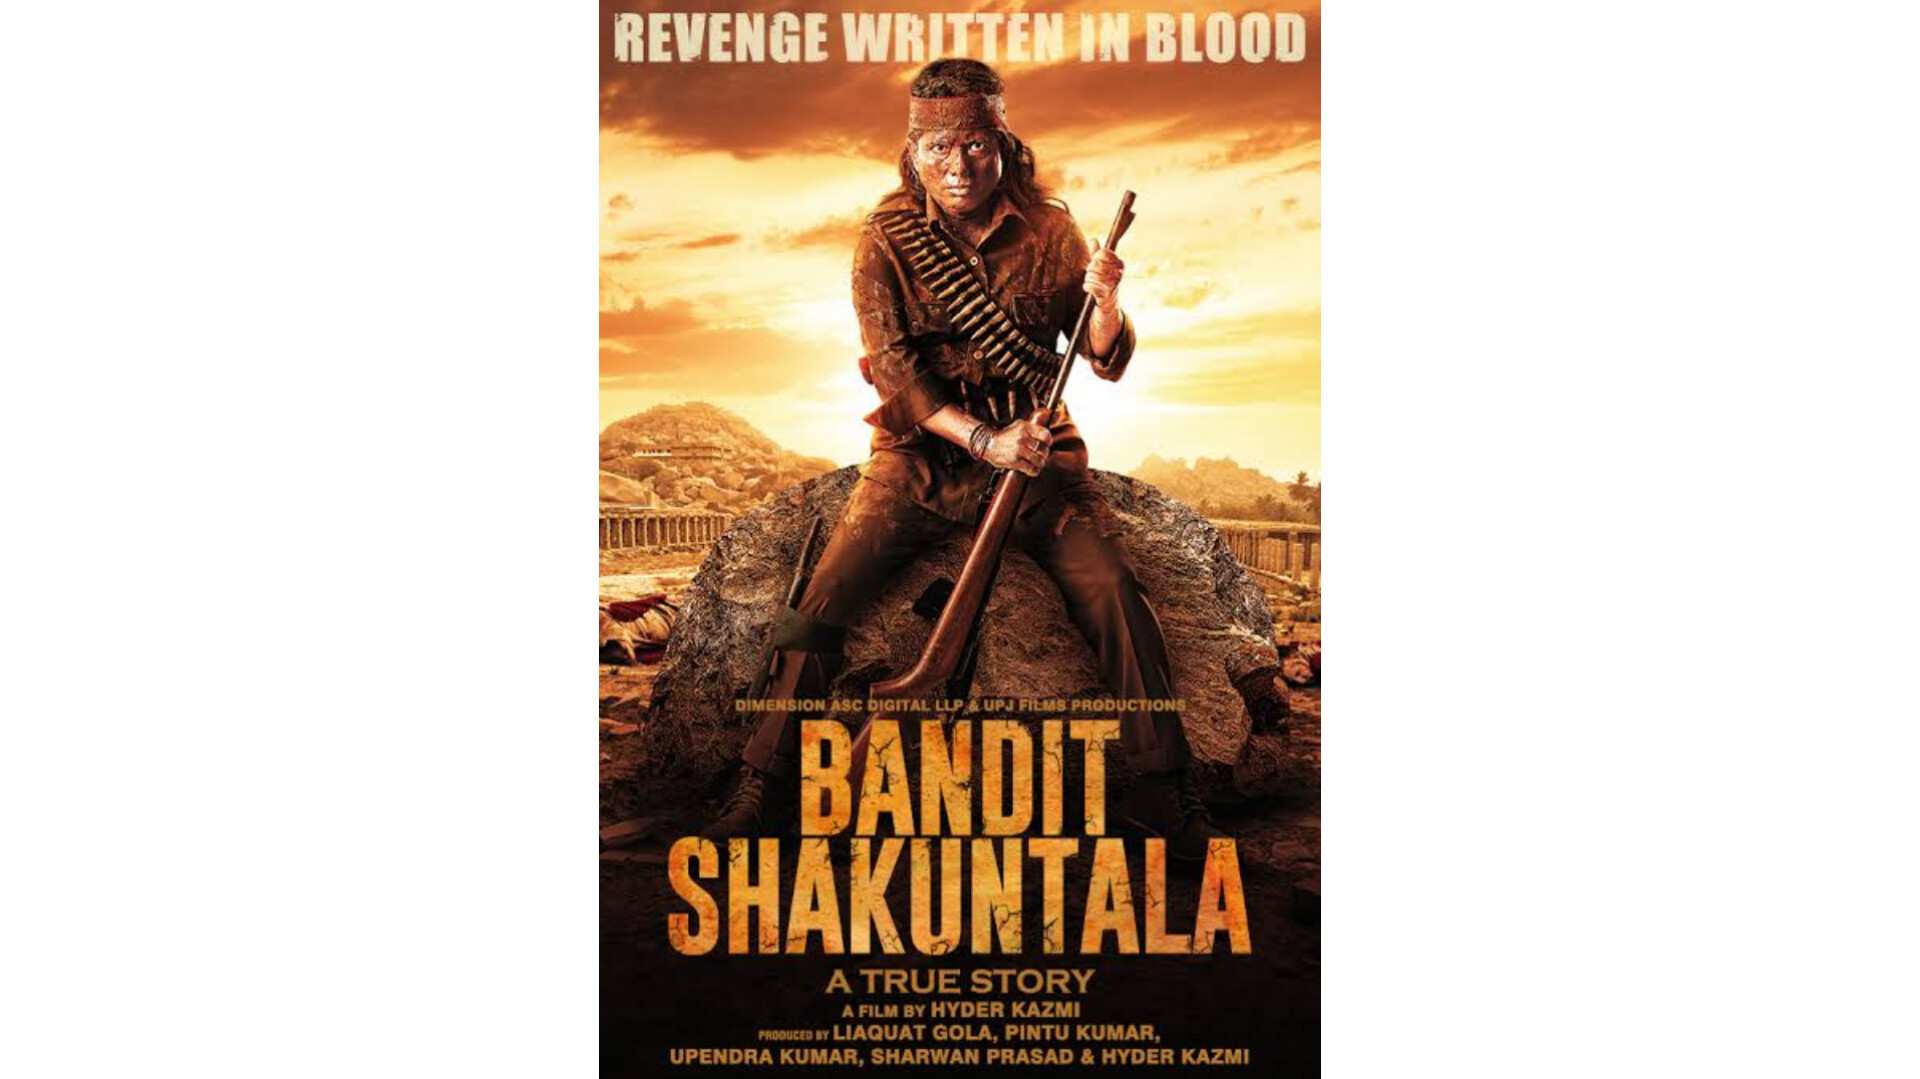 फिल्मकार हैदर काजमी की फिल्म 'बैंडिट शकुंतला' का ट्रेलर आउट